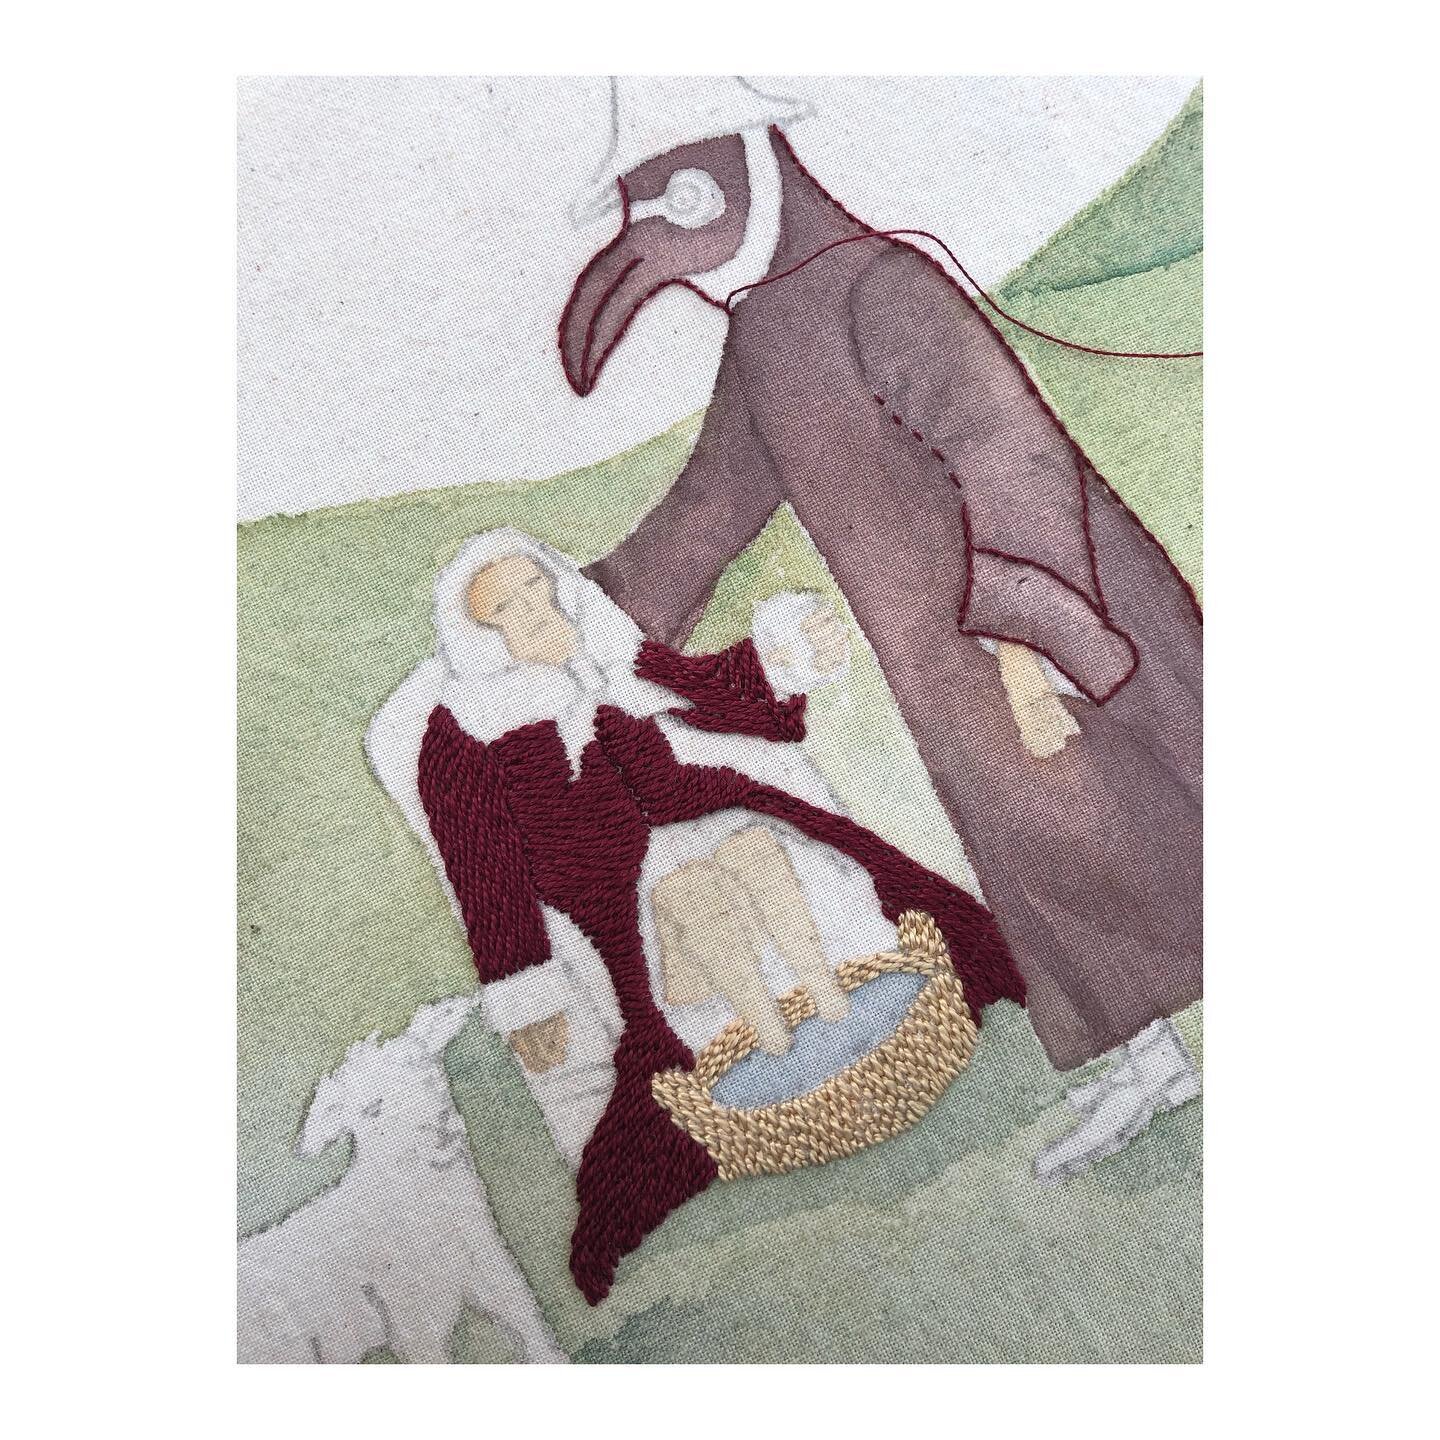 Baden.
Estudios bordados del m&eacute;dico, el enfermo y la oveja.
Bordado y acuarela @piedrasy_agua sobre tela.

#embroideryart 
#embroiderywatercolor 
#baden
#sheep